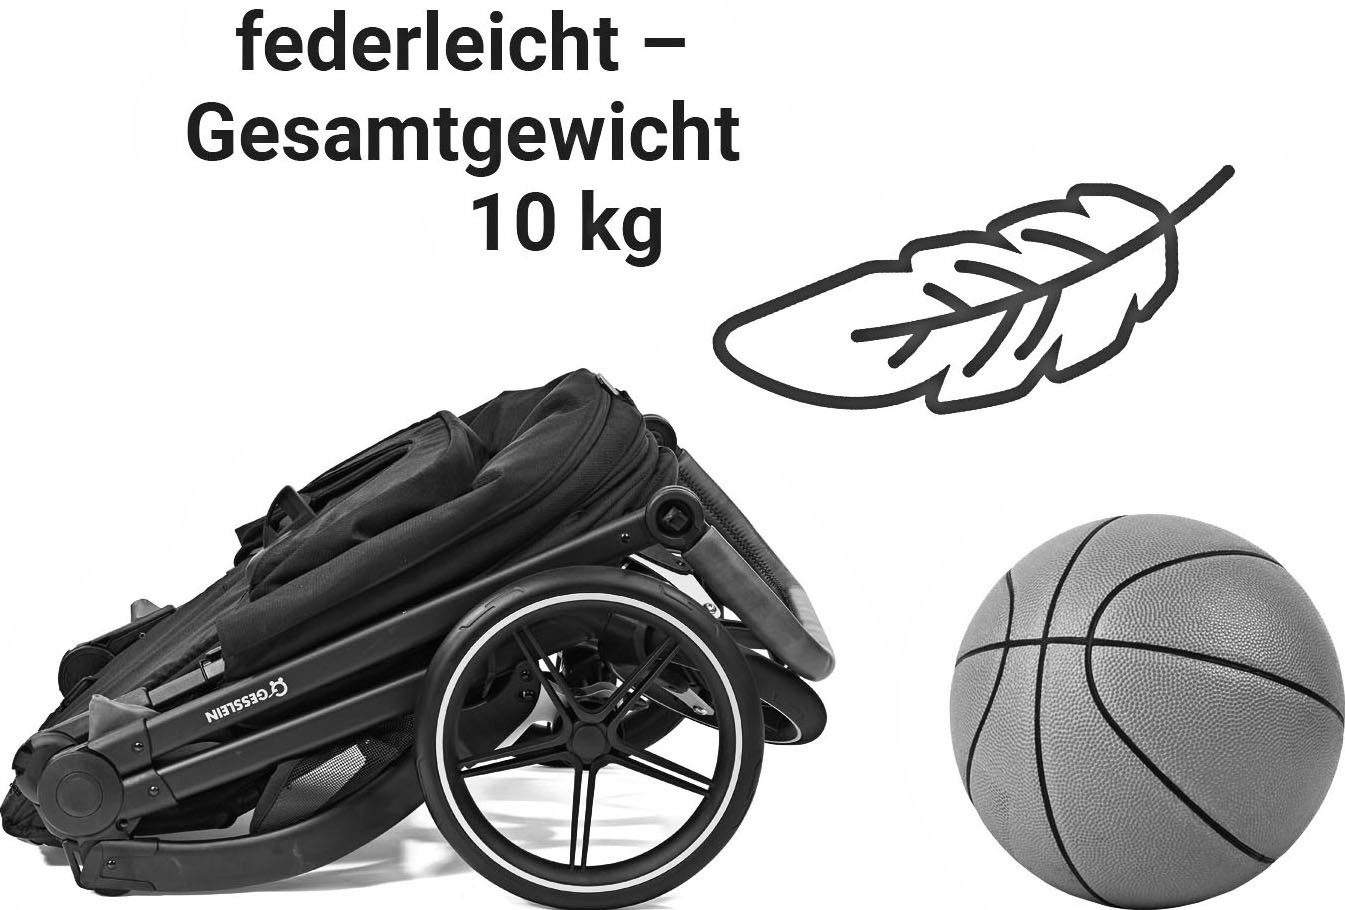 Gesslein Kombi-Kinderwagen FX4 Soft+ Swing Babyschalenadapter mit Babywanne und mit Aufsatz C3 schwarz, beere